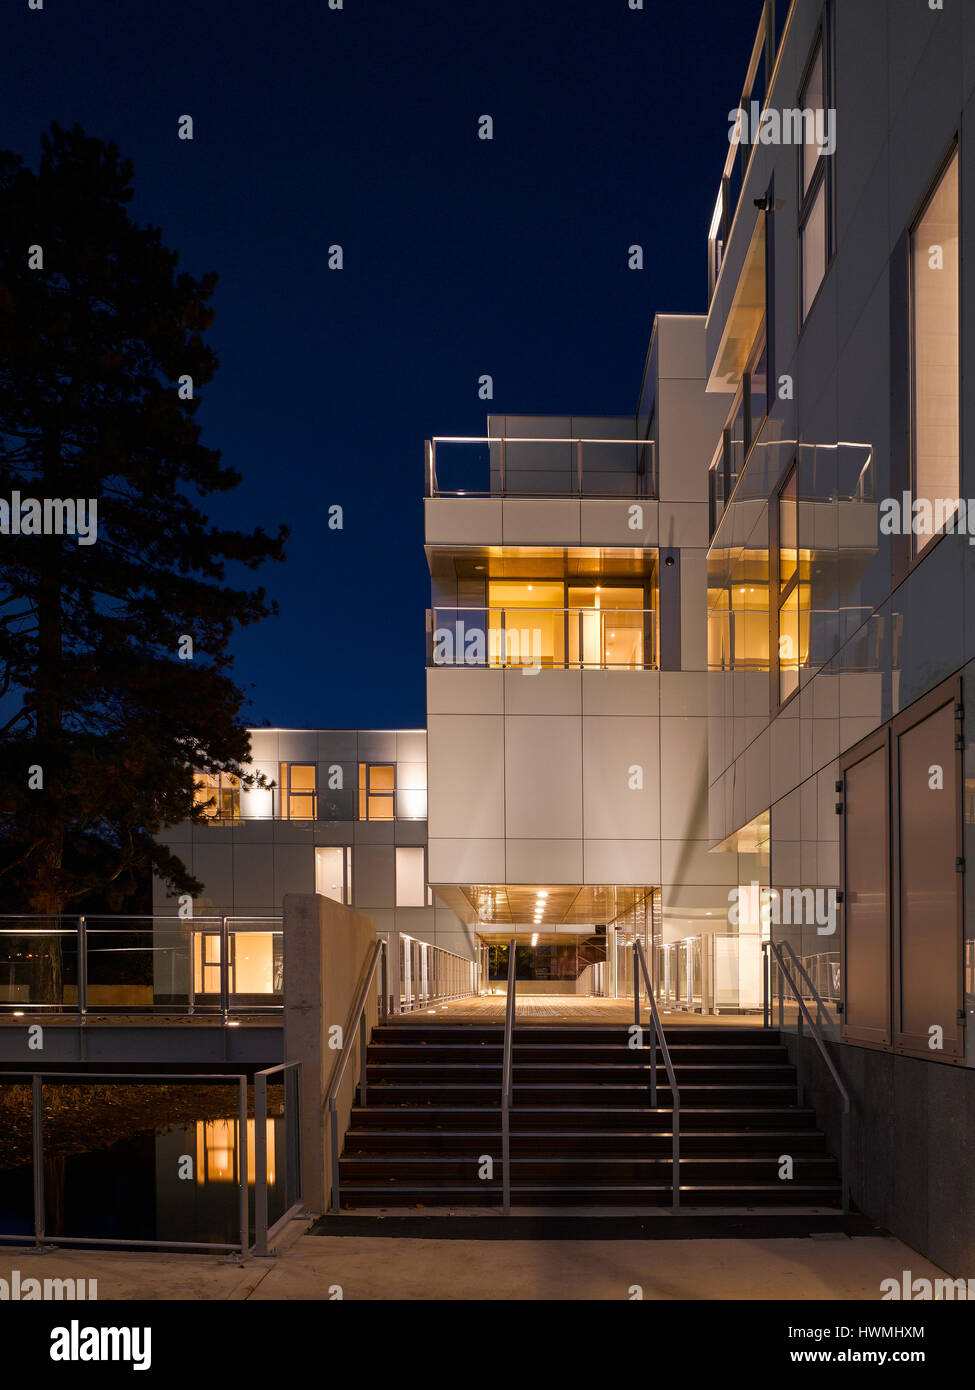 Nachtansicht von außen mit Treppe und Gehweg. Dunluce Apartments, Ballsbridge, Irland. Architekt: Derek Tynan Architekten, 2016. Stockfoto